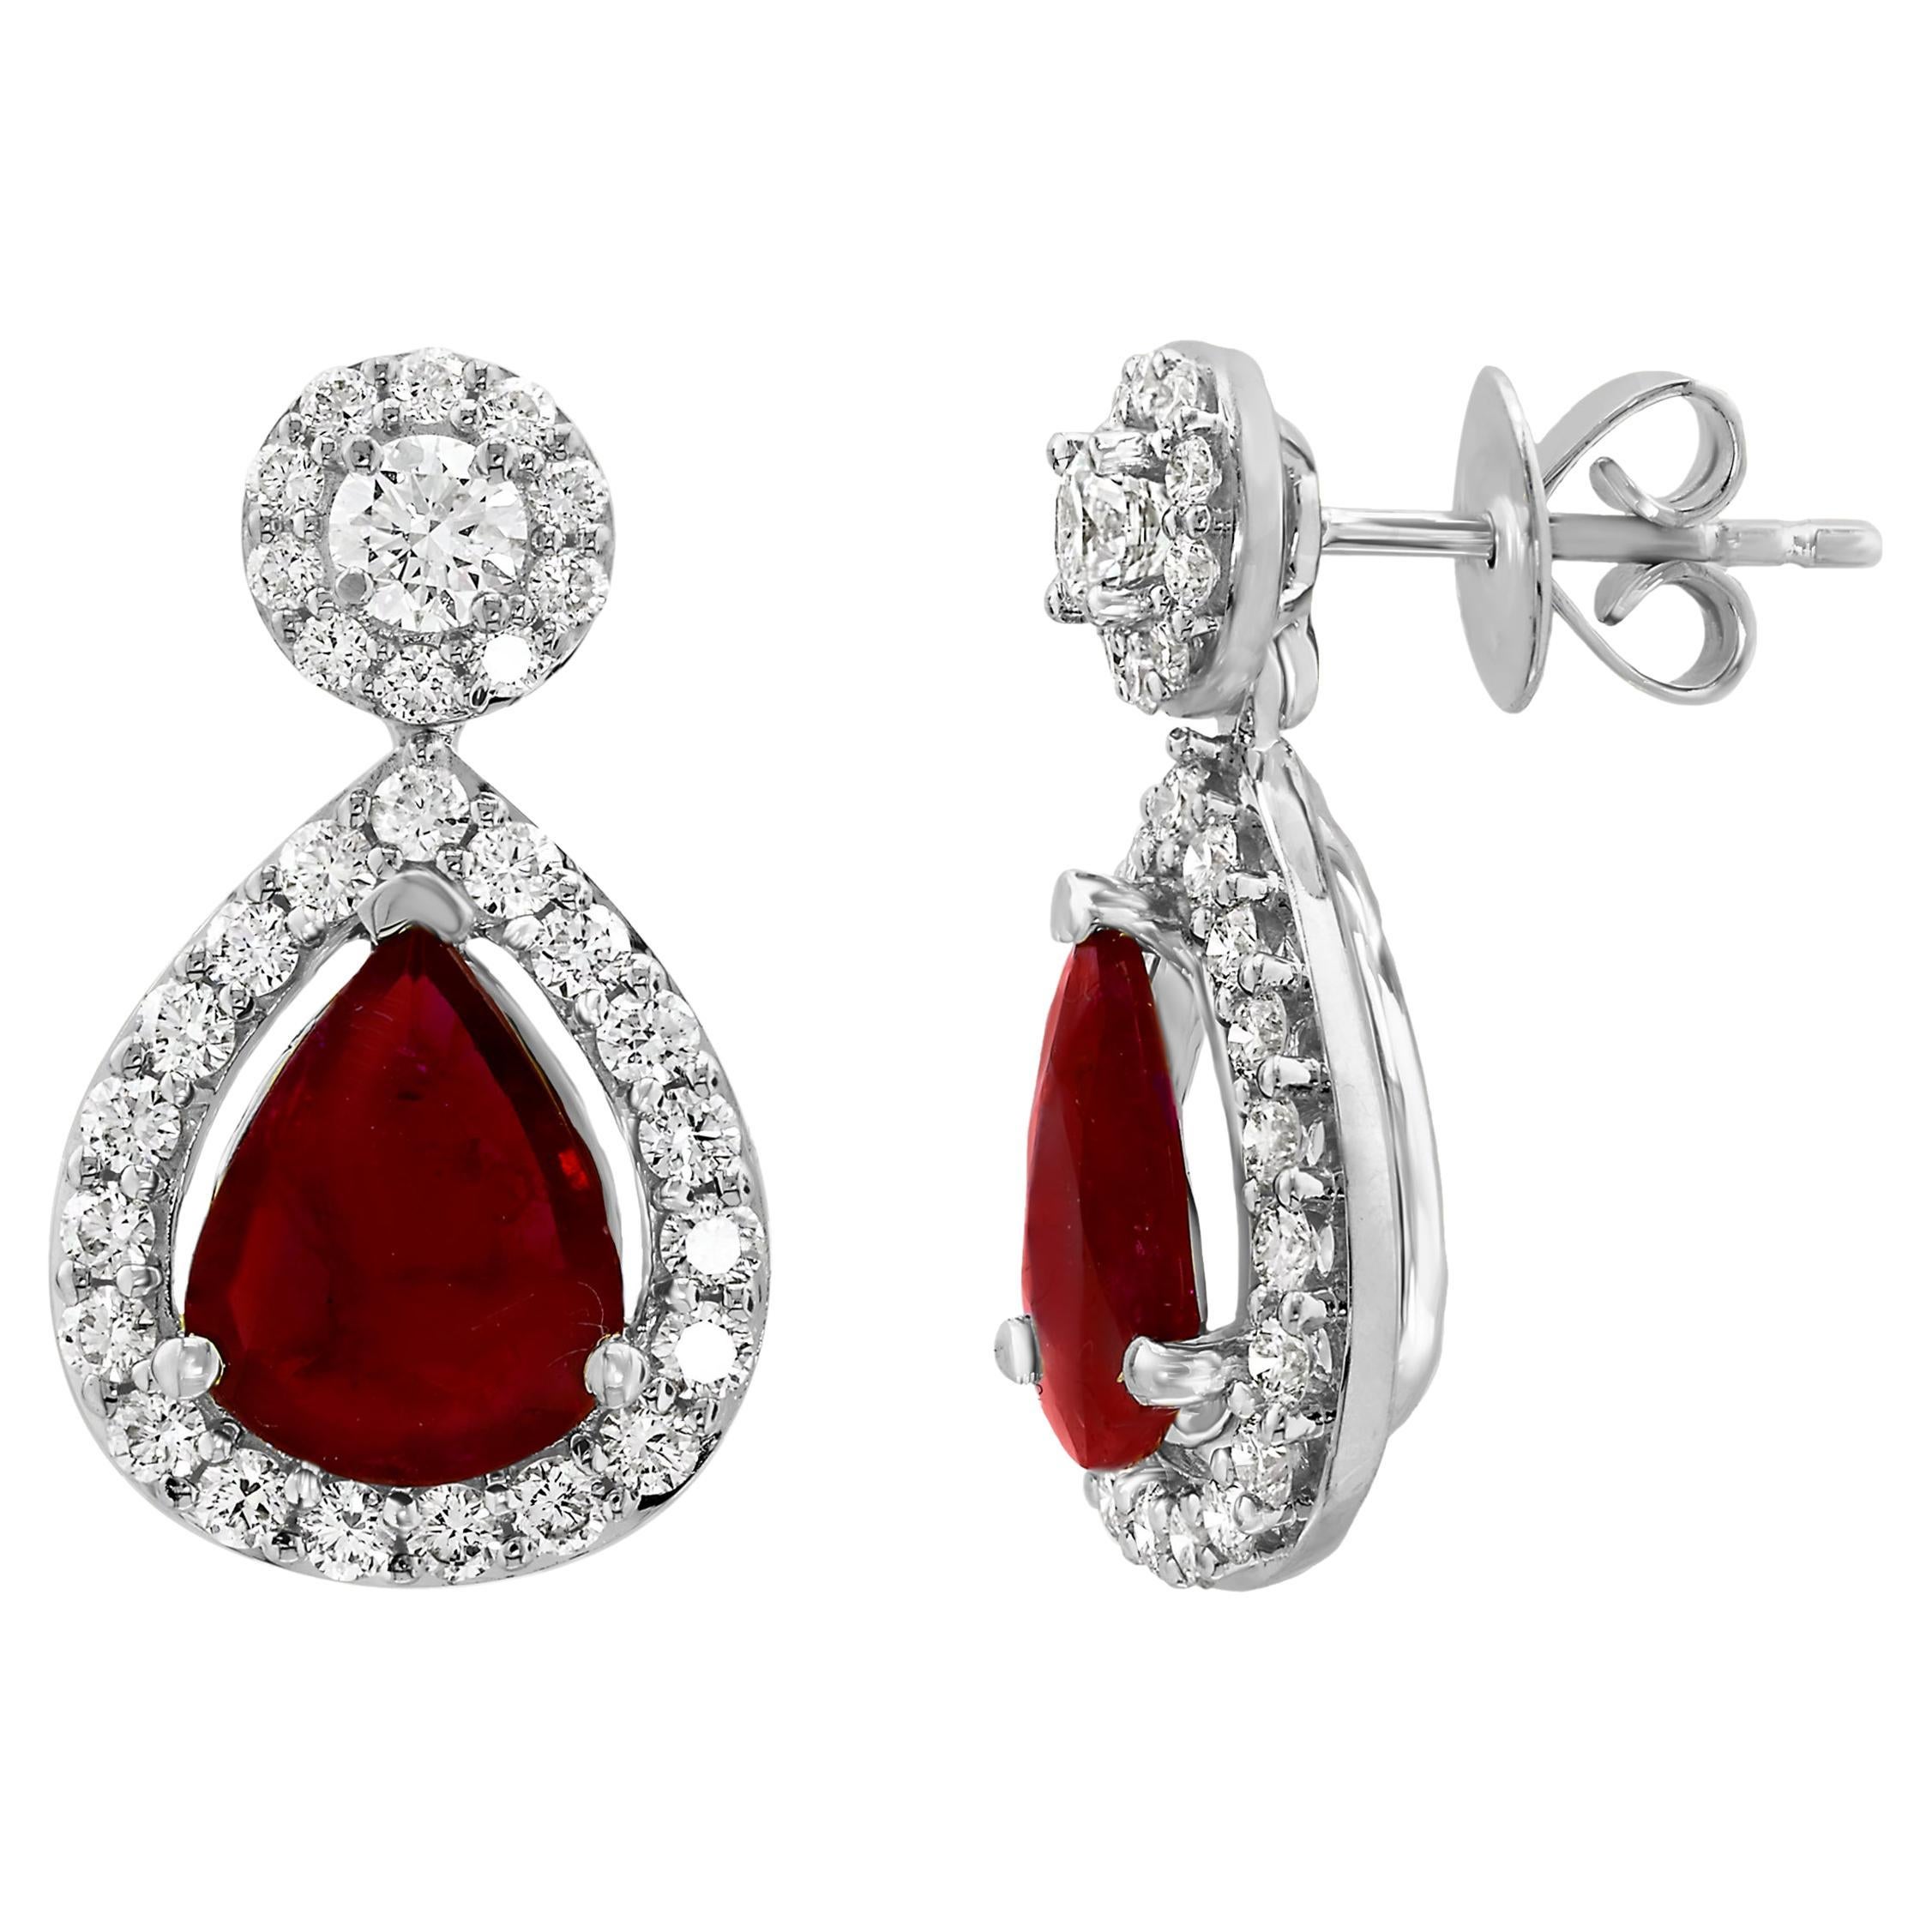 3.56 Carat of Pear Shape Ruby Diamond Drop Earrings in 18K White Gold For Sale